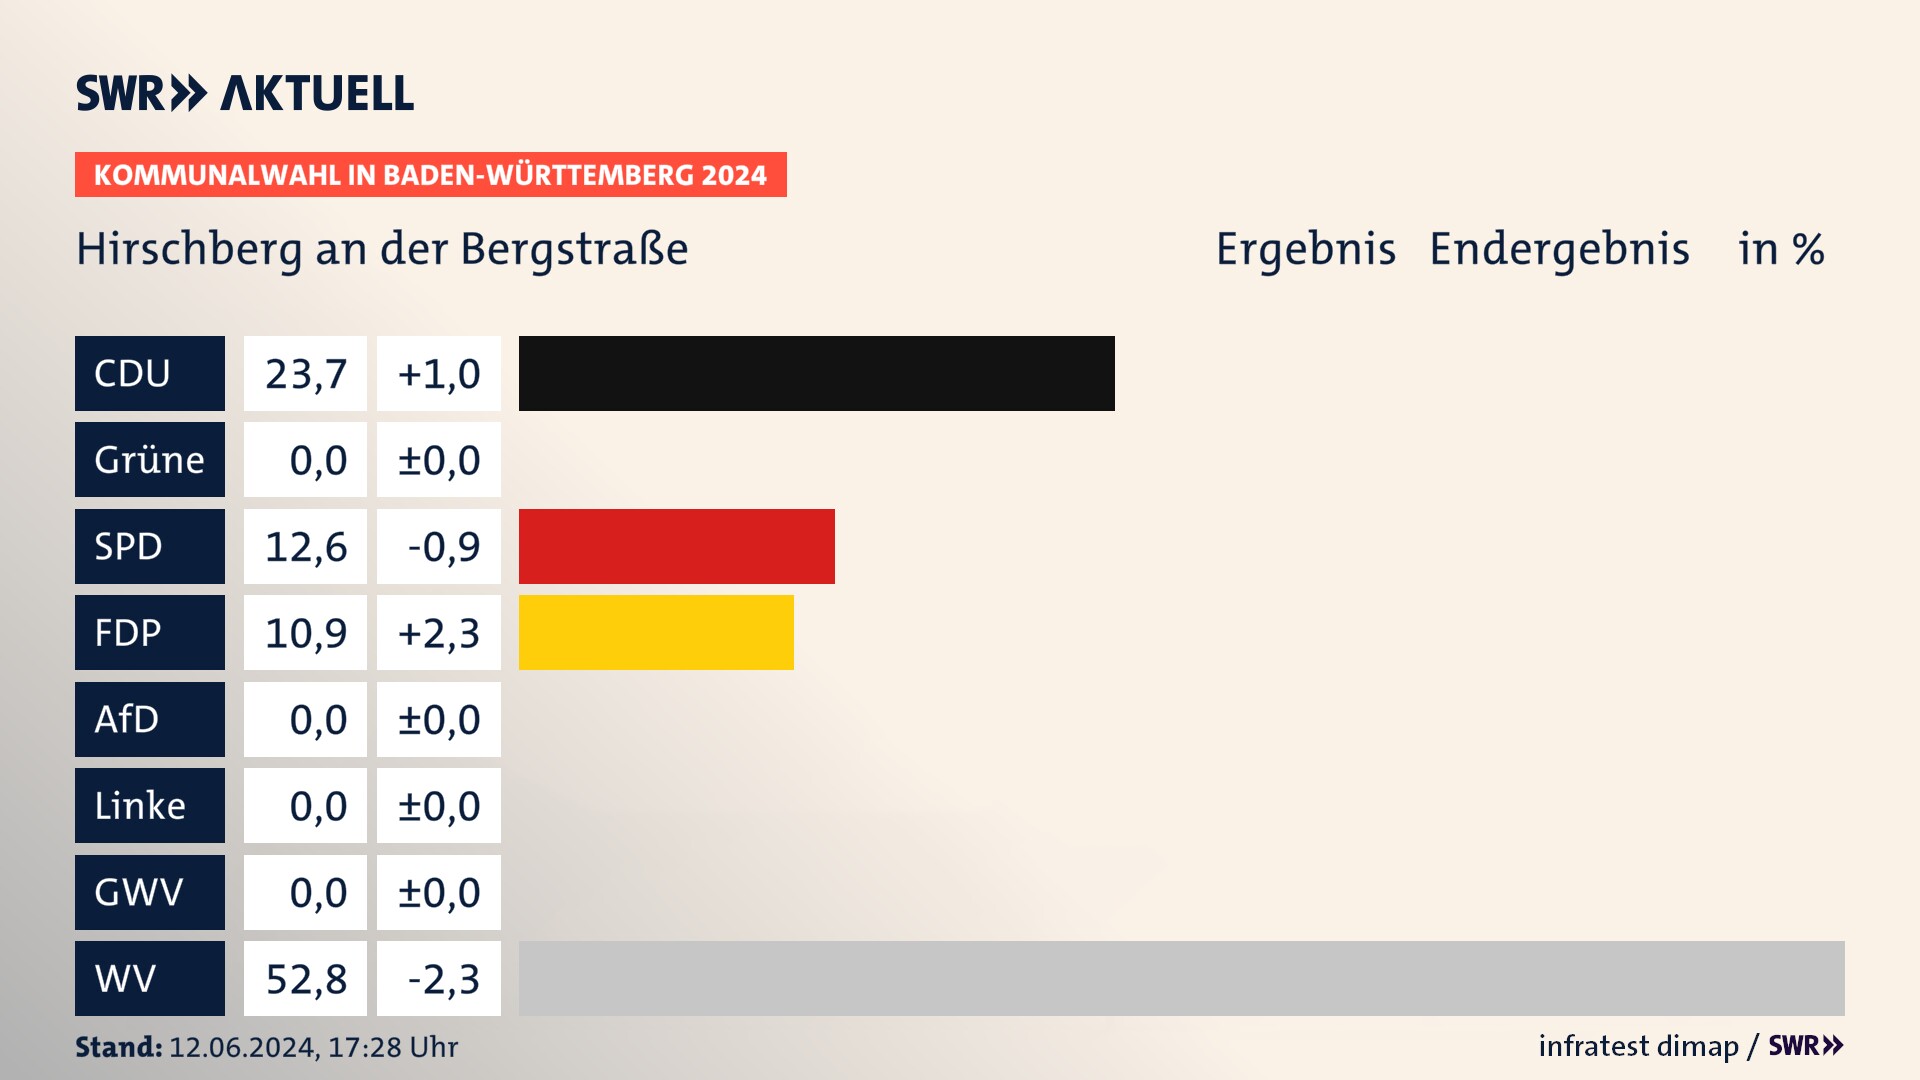 Kommunalwahl 2024 Endergebnis Zweitstimme für Hirschberg an der Bergstraße. In Hirschberg an der Bergstraße erzielt die CDU 23,7 Prozent der gültigen  Stimmen. Die SPD landet bei 12,6 Prozent. Die FDP erreicht 10,9 Prozent. Die Wählervereinigungen kommen auf 52,8 Prozent.